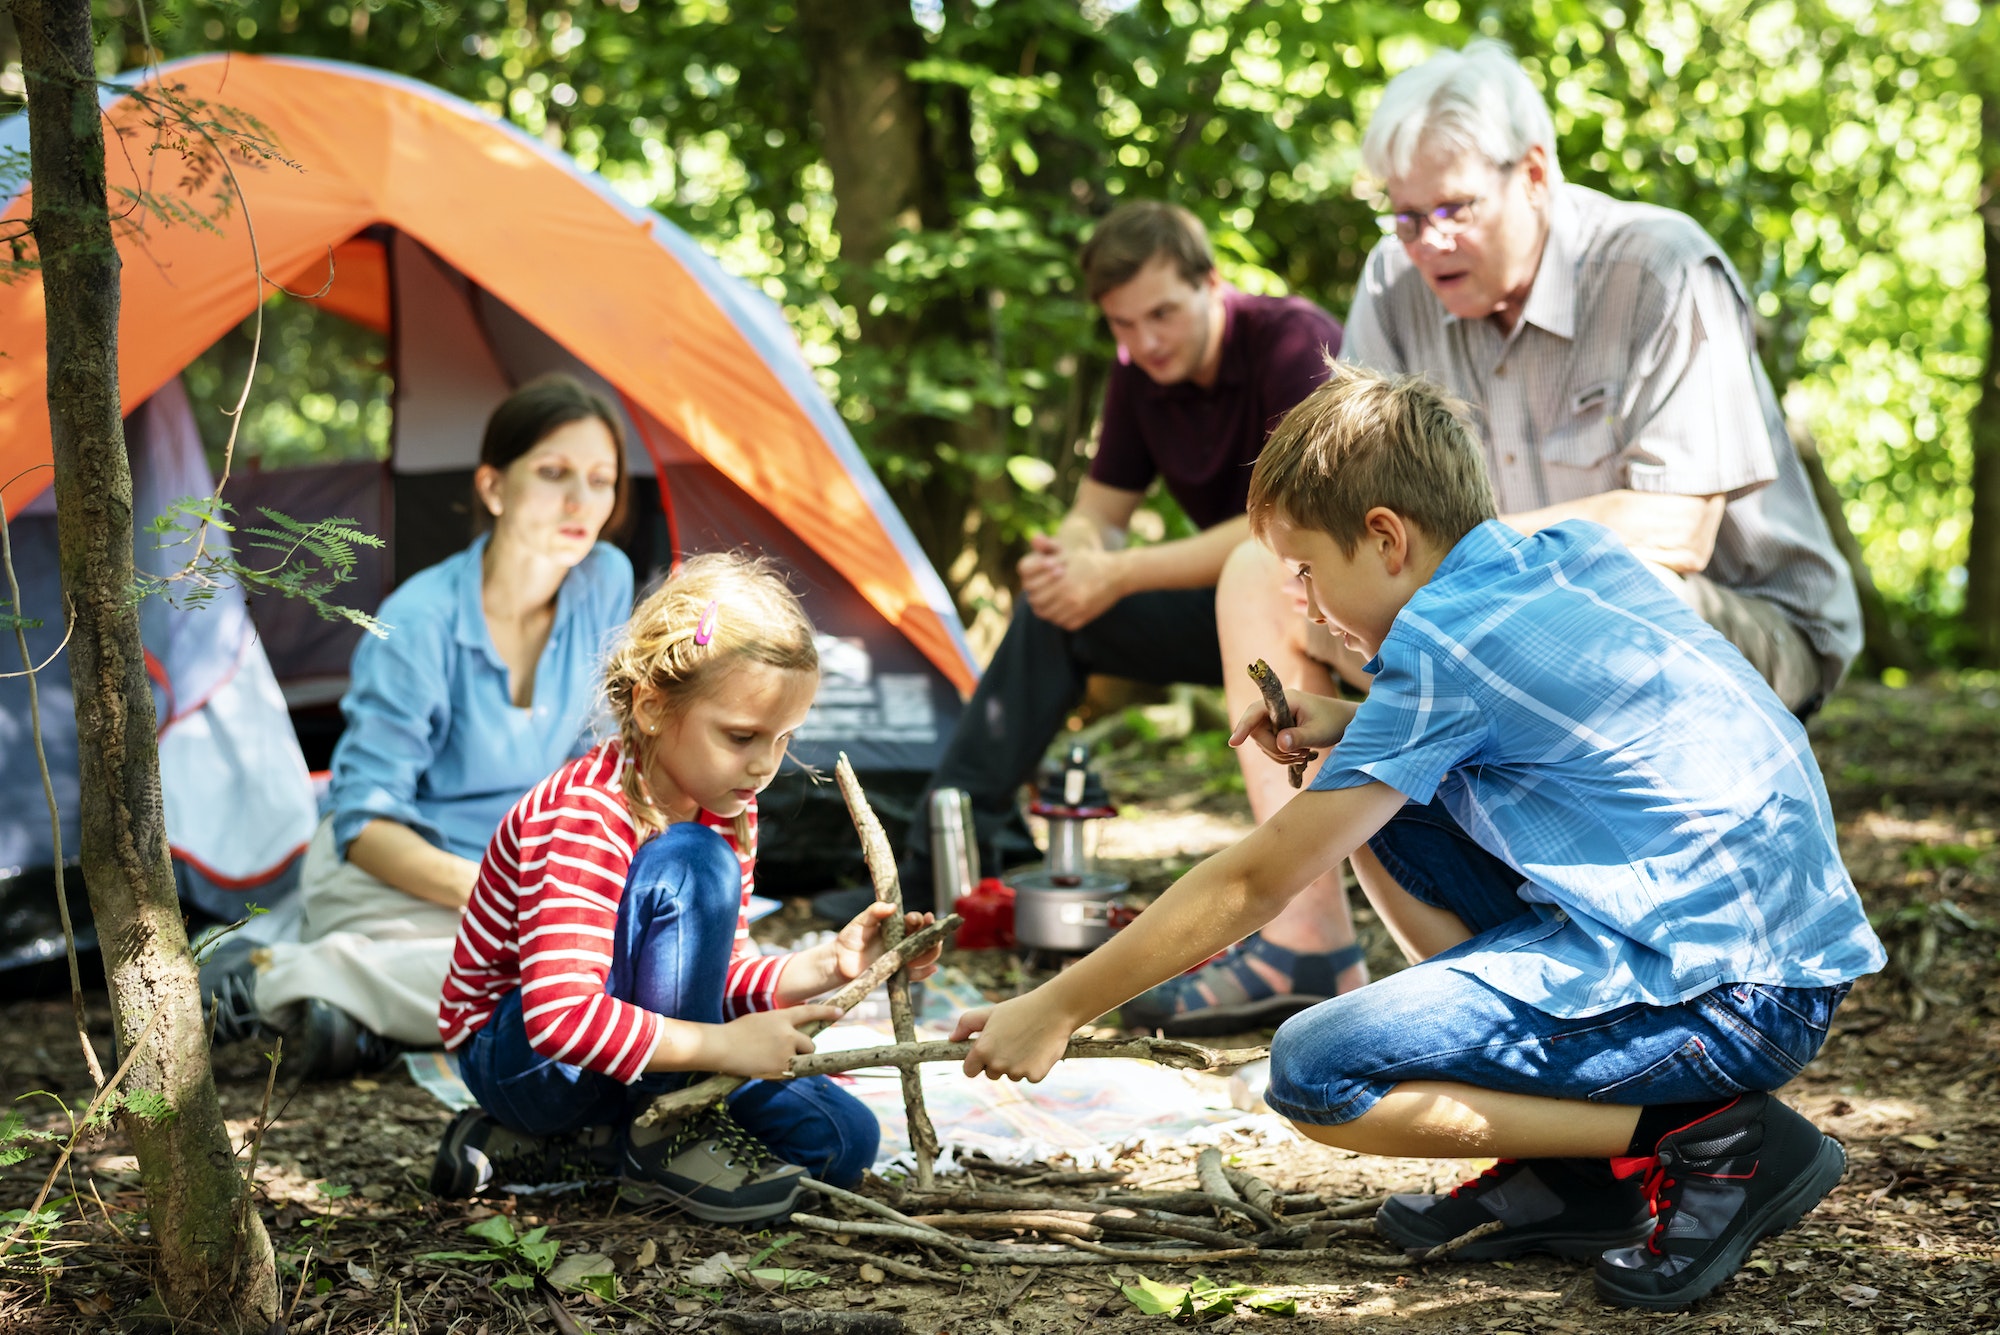 Stay in a camp. Семейный кемпинг. Семейный кемпинг в лесу. Семья на природе с палаткой. Кемпинг с детьми.